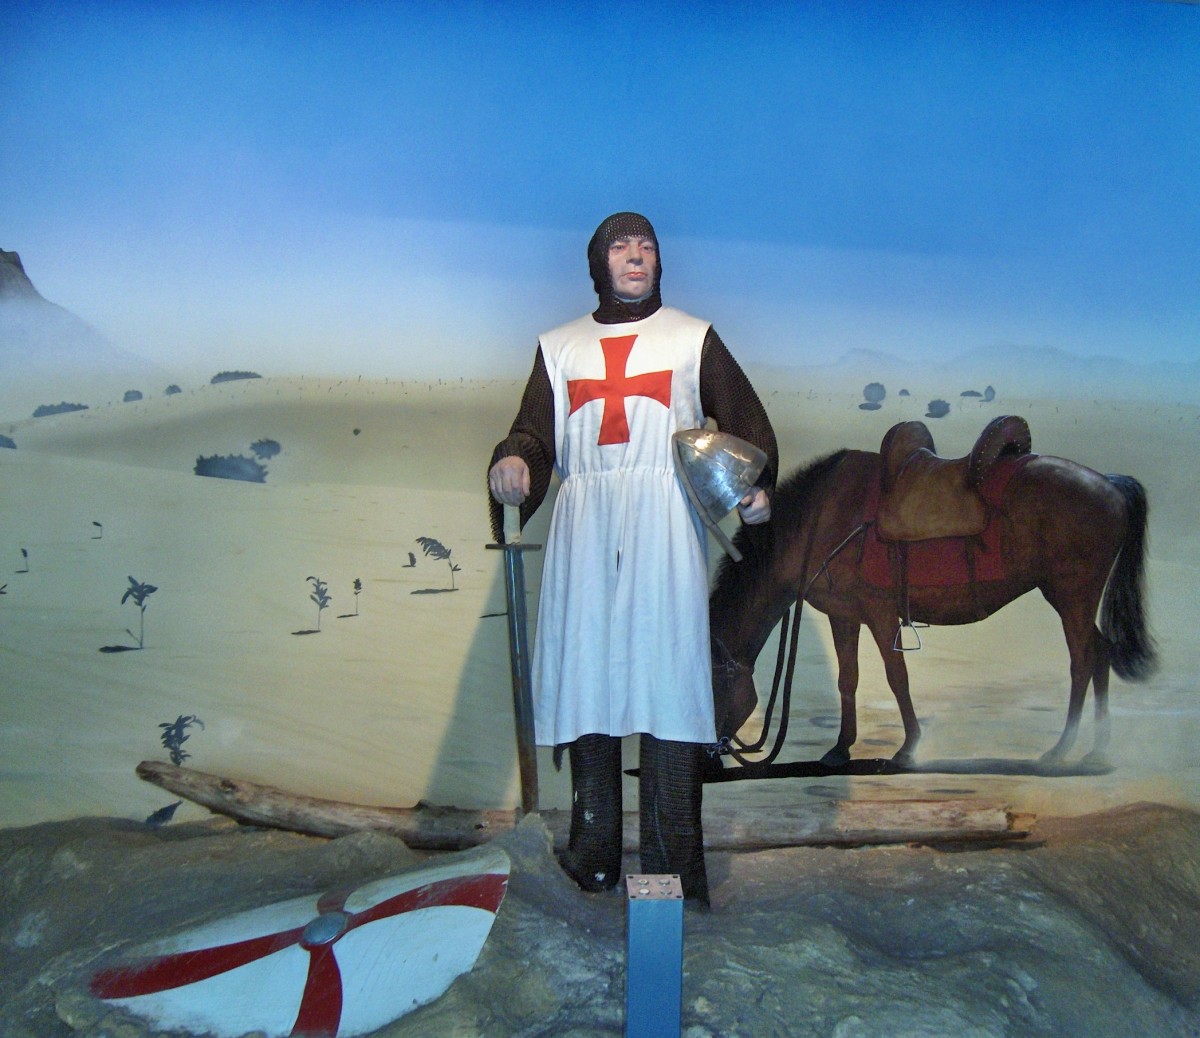 A Knight Templar.